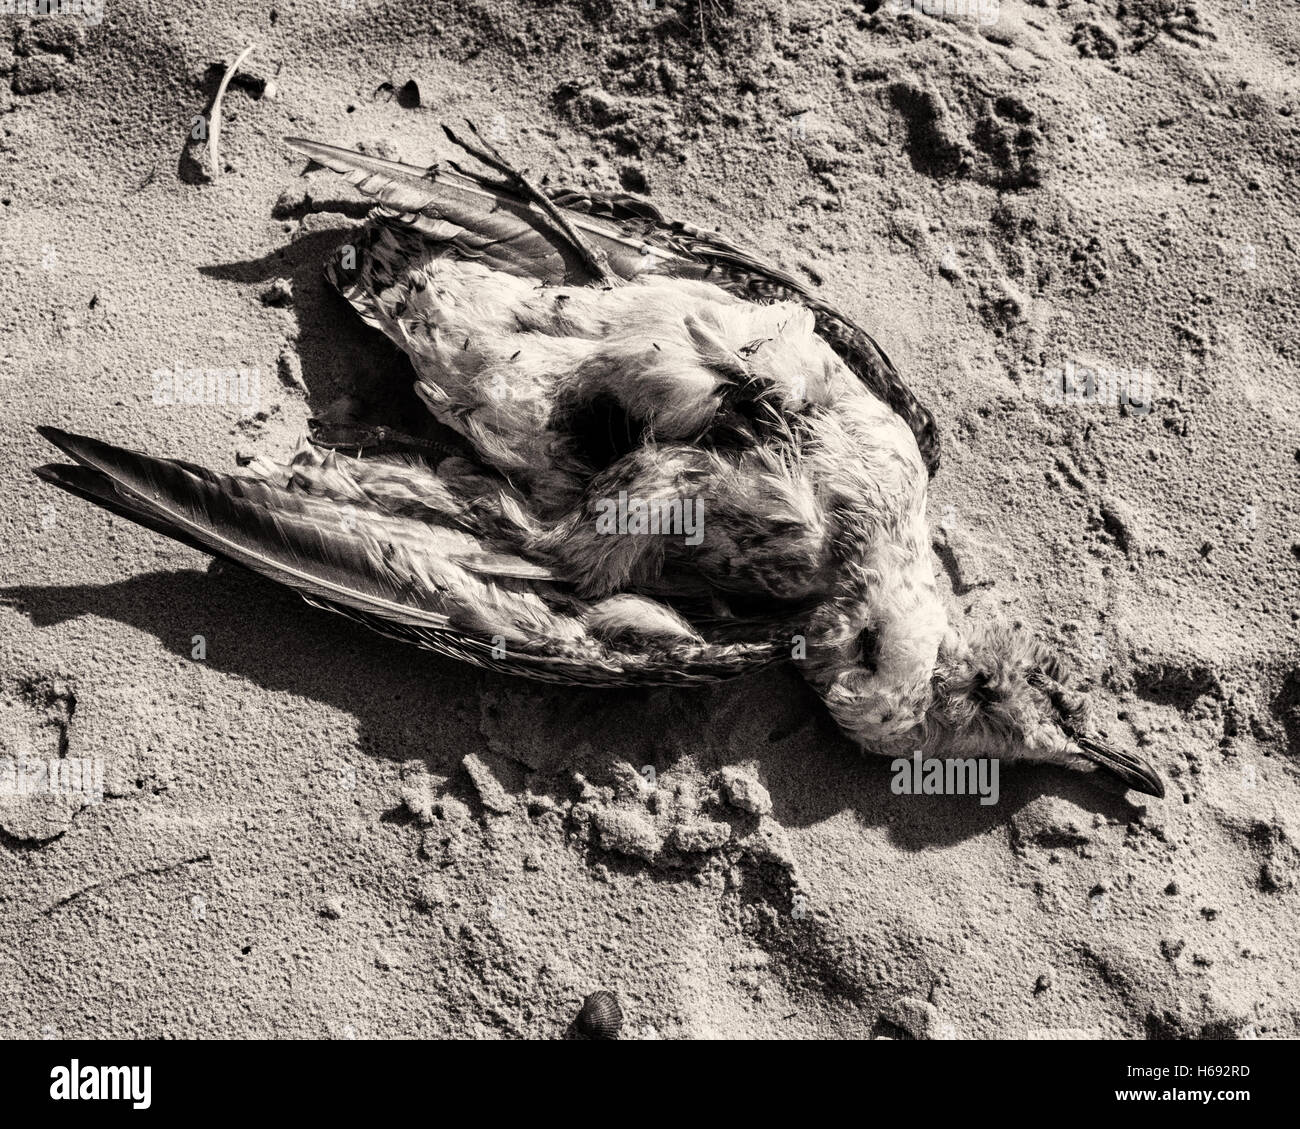 Am Strand, Langeoog. Deutschland La Germania. Un uccello morto trovato recante sulla spiaggia sabbiosa. Si tratta di una giornata di sole causando forti ombre e un contrasto elevato in sabbia. Foto Stock